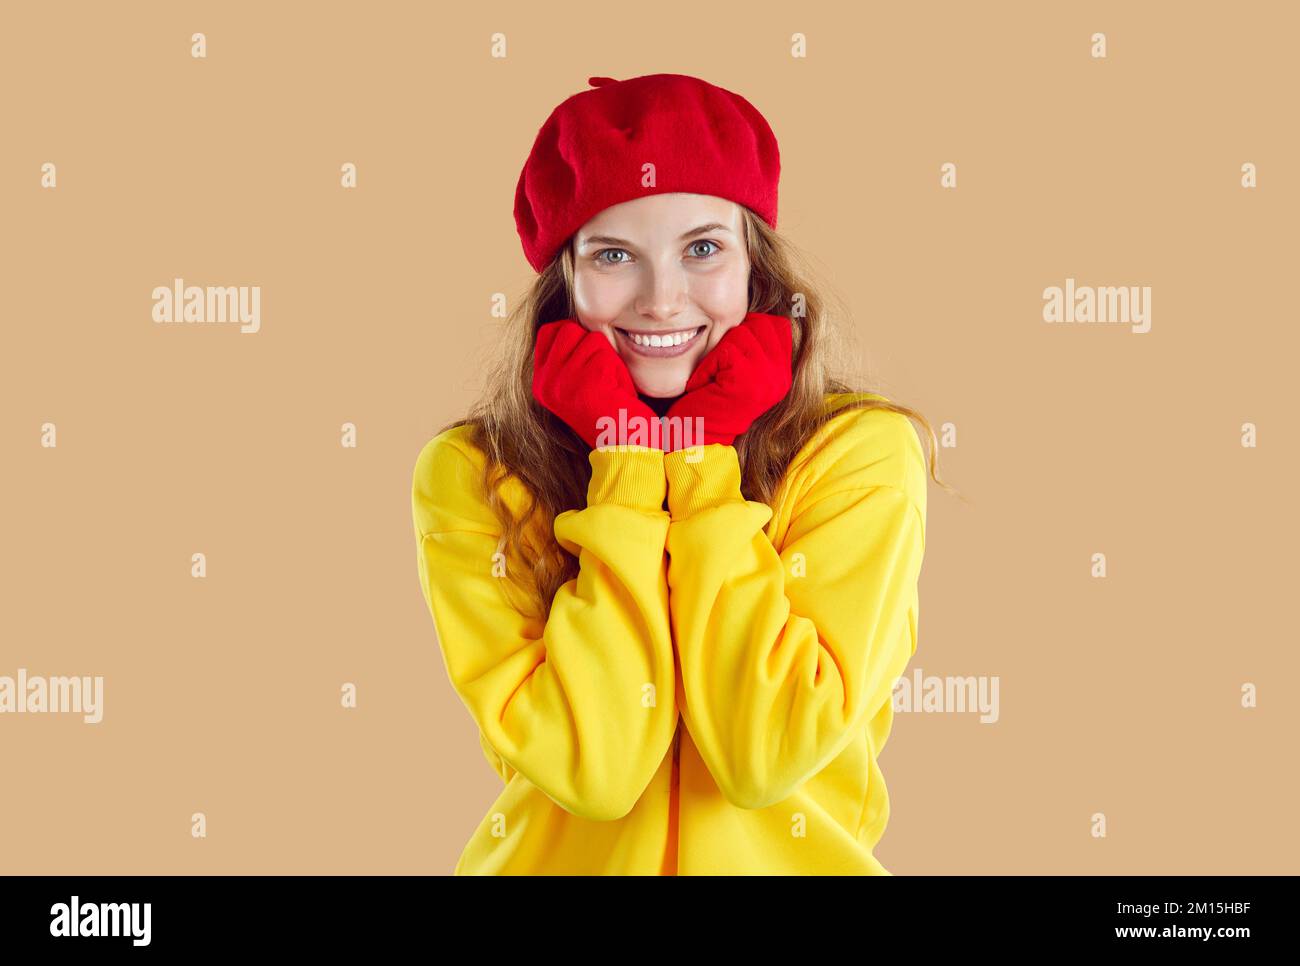 Porträt einer süßen lächelnden jungen Frau in Herbstkleidung, die ihre Hände nahe ihrem Gesicht hält. Stockfoto